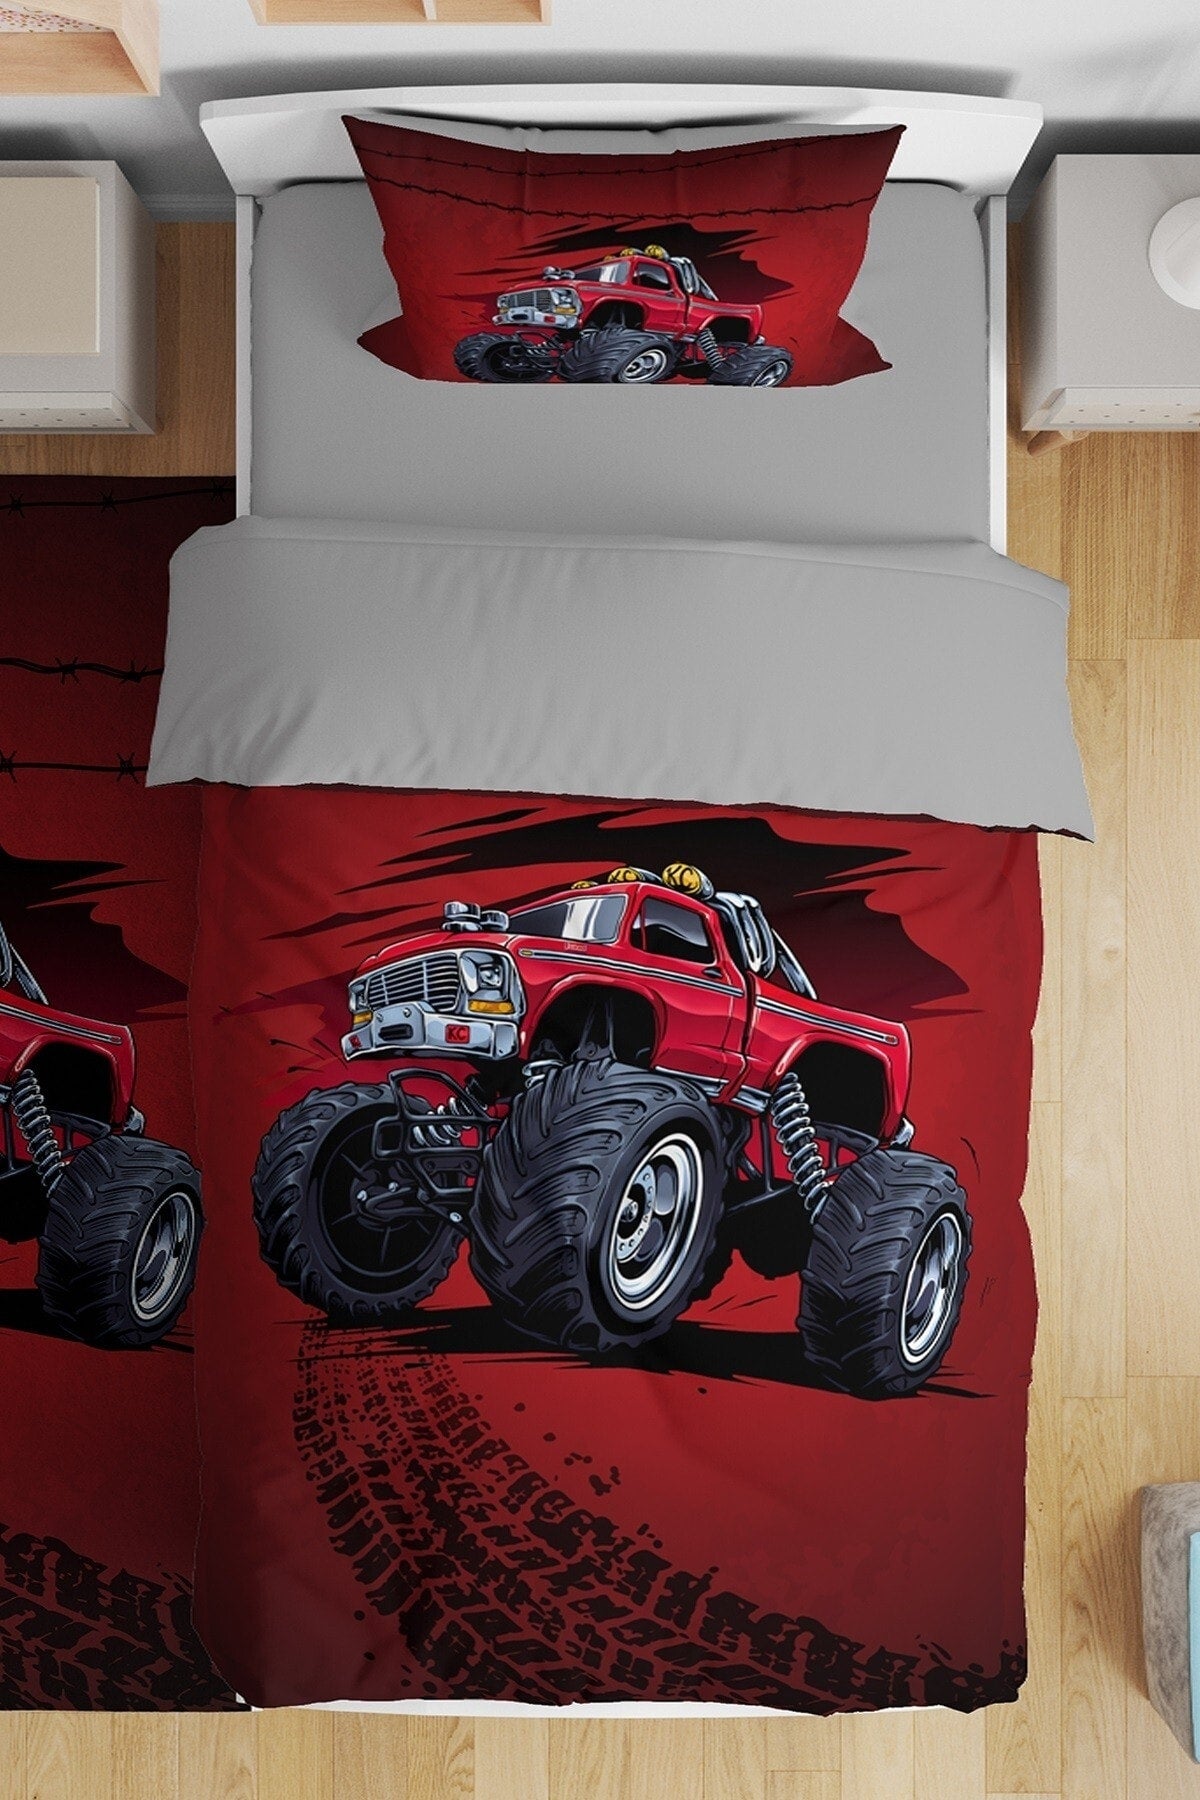 Red Monster Truck Patterned Single Baby Duvet Cover Set